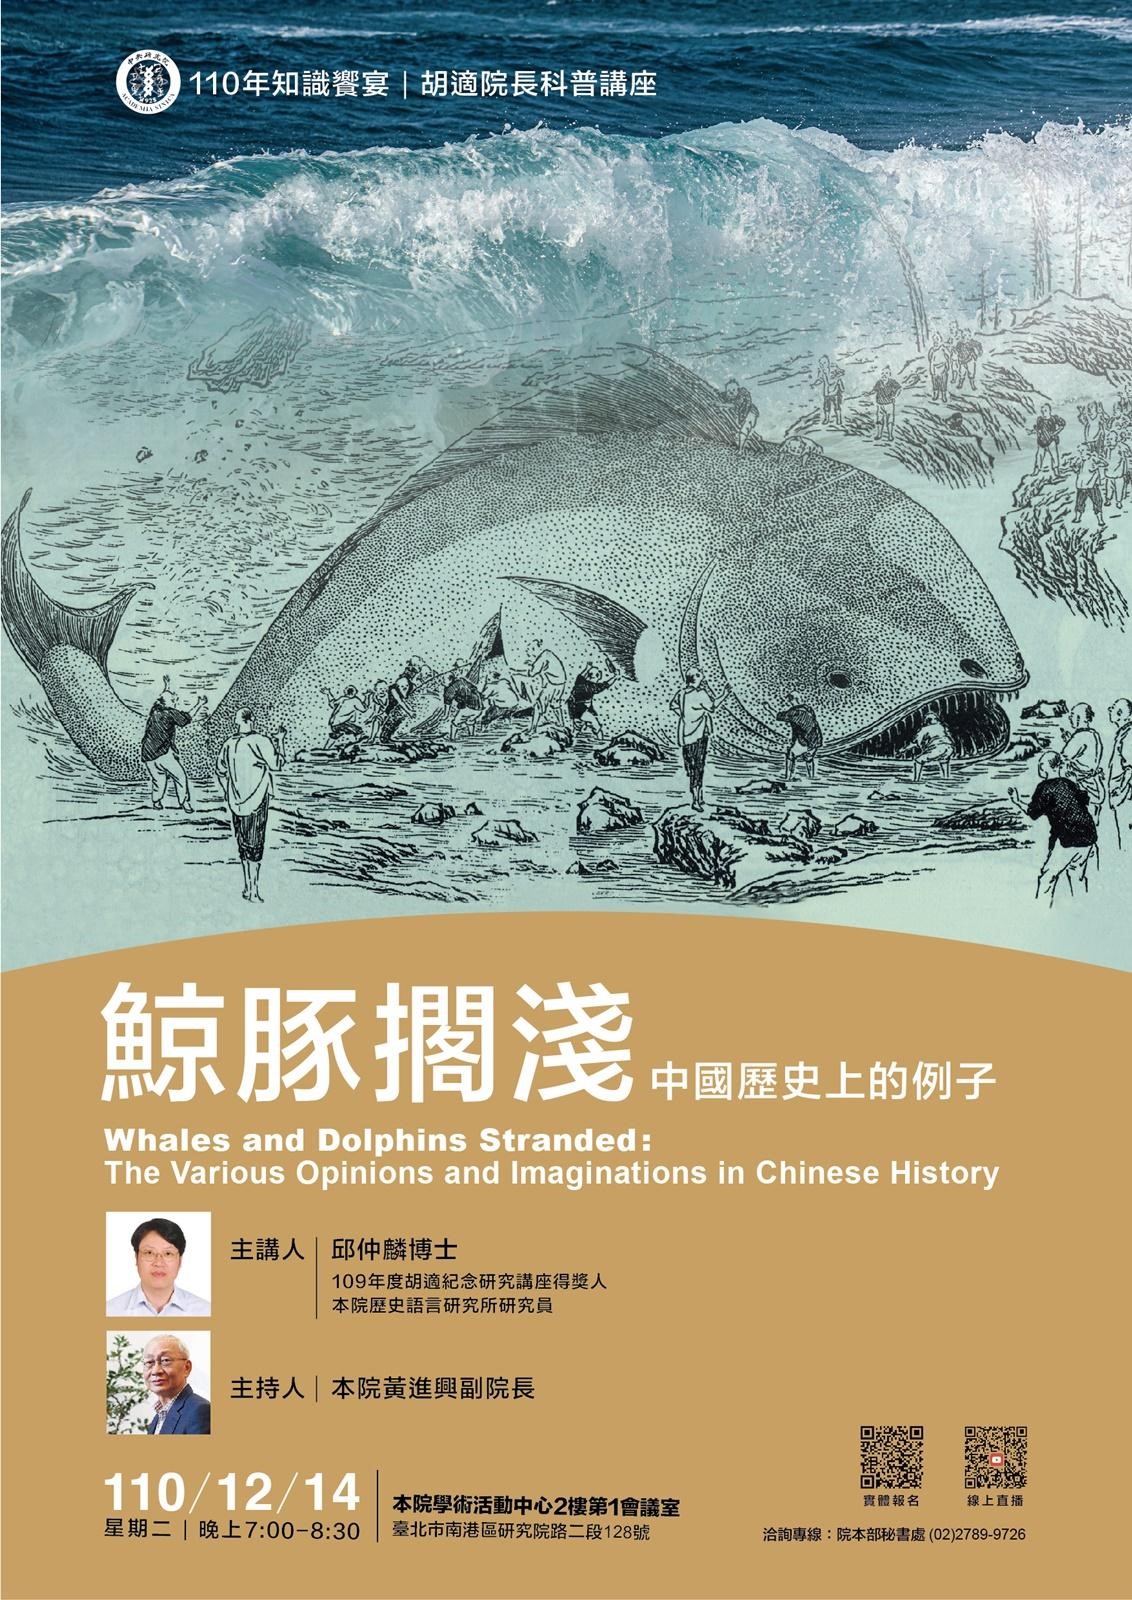 110年知識饗宴—胡適院長科普講座 「鯨豚擱淺：中國歷史上的例子」